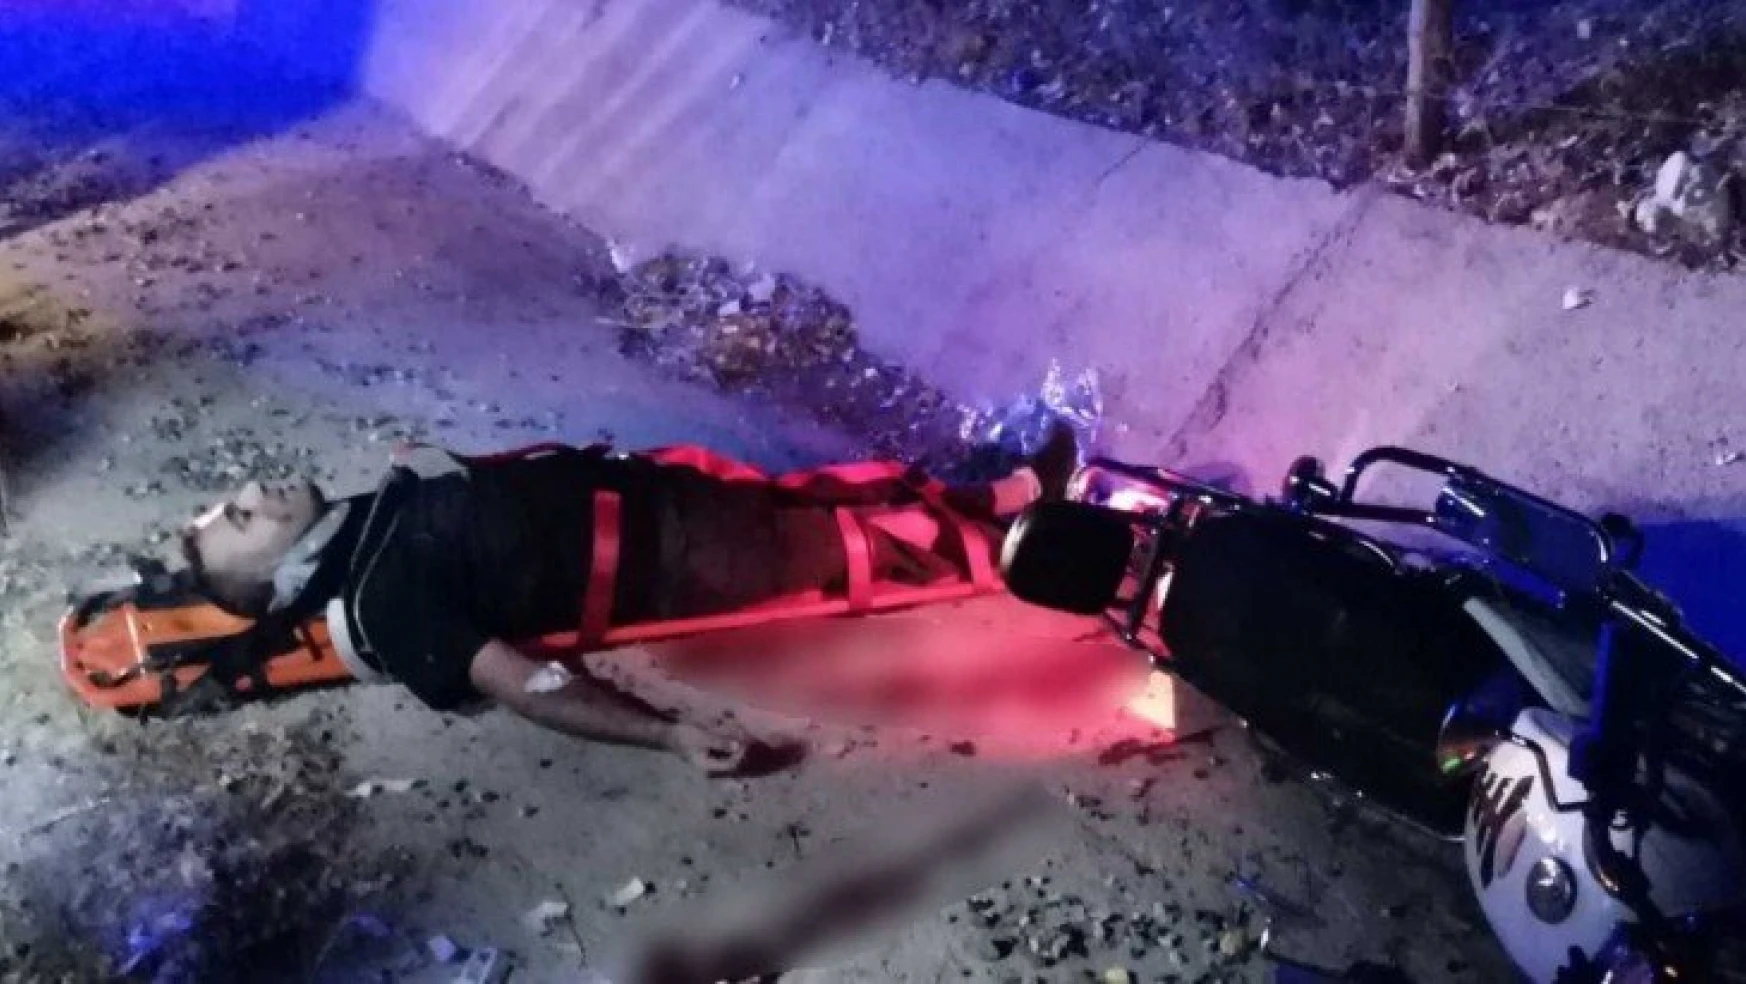 Taklalar atan motosiklet kanala düştü: 2 yaralı